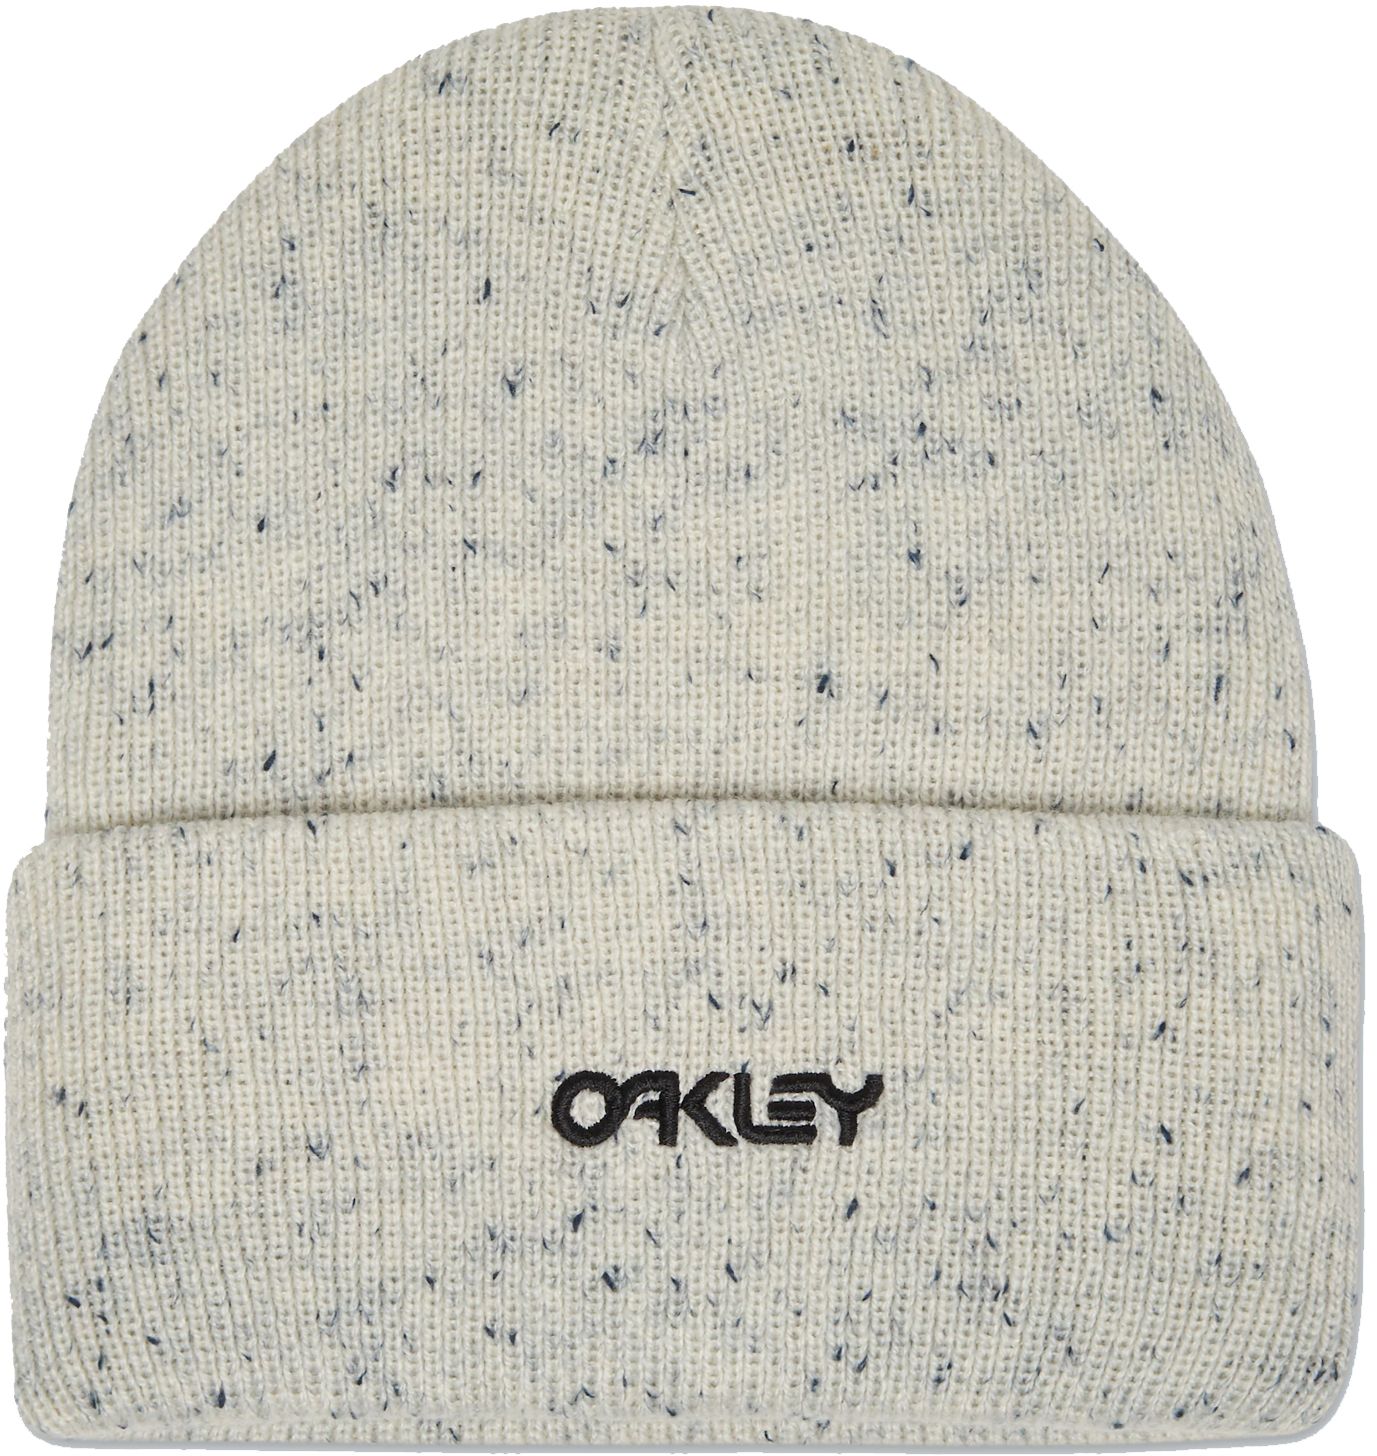 Oakley zimní čepice B1B Speckled white + doručení do 24 hod.